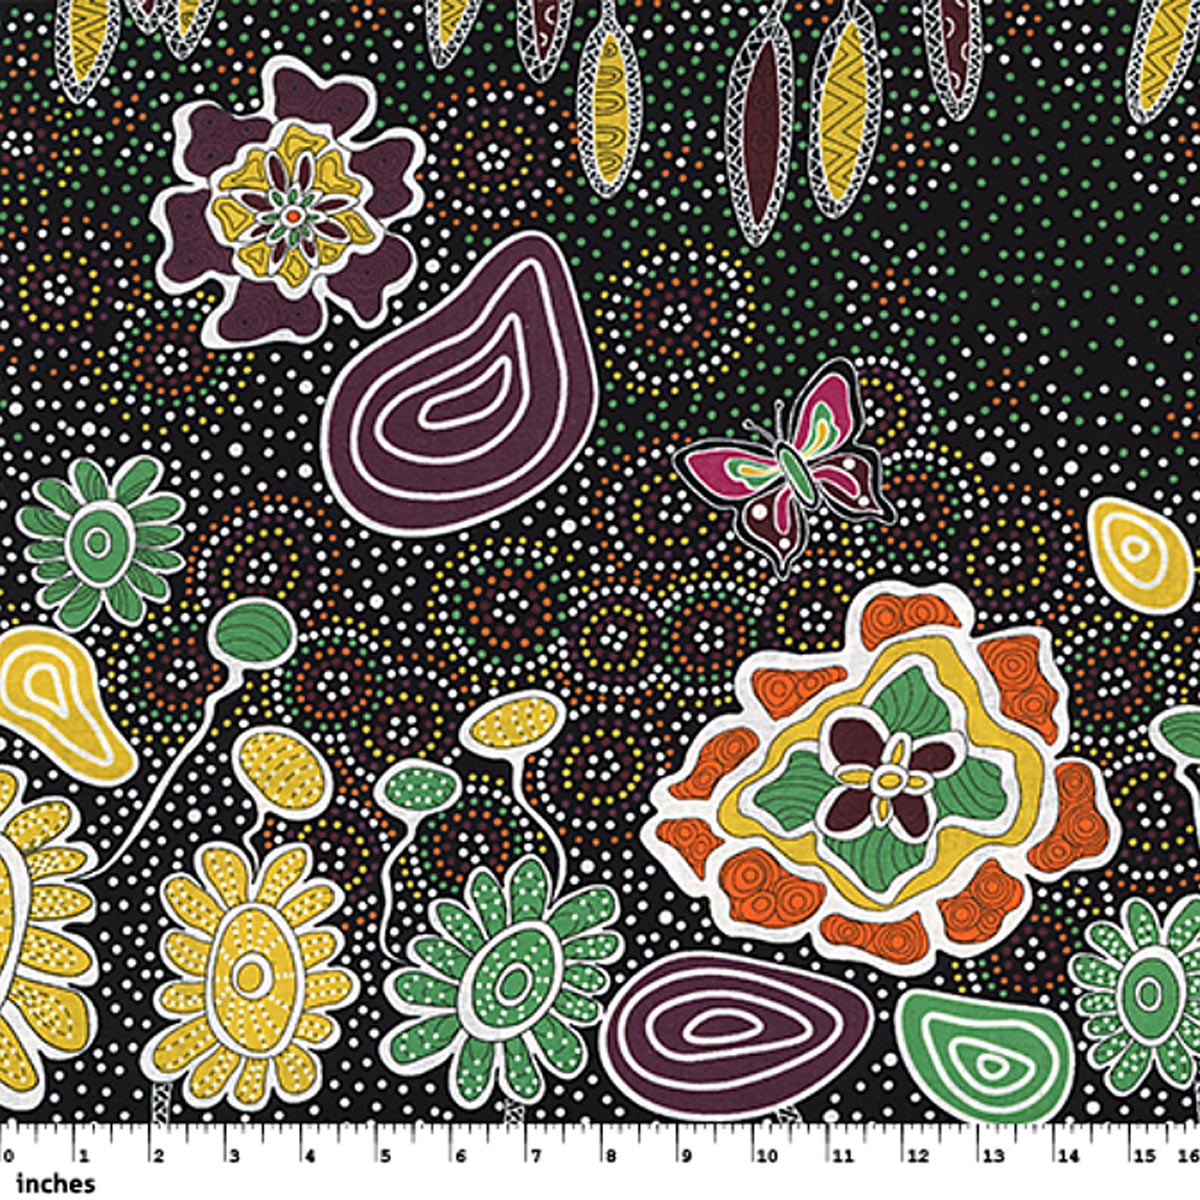 SUMMERTIME RAINFOREST BLACK by Aboriginal Artist HEATHER KENNEDY